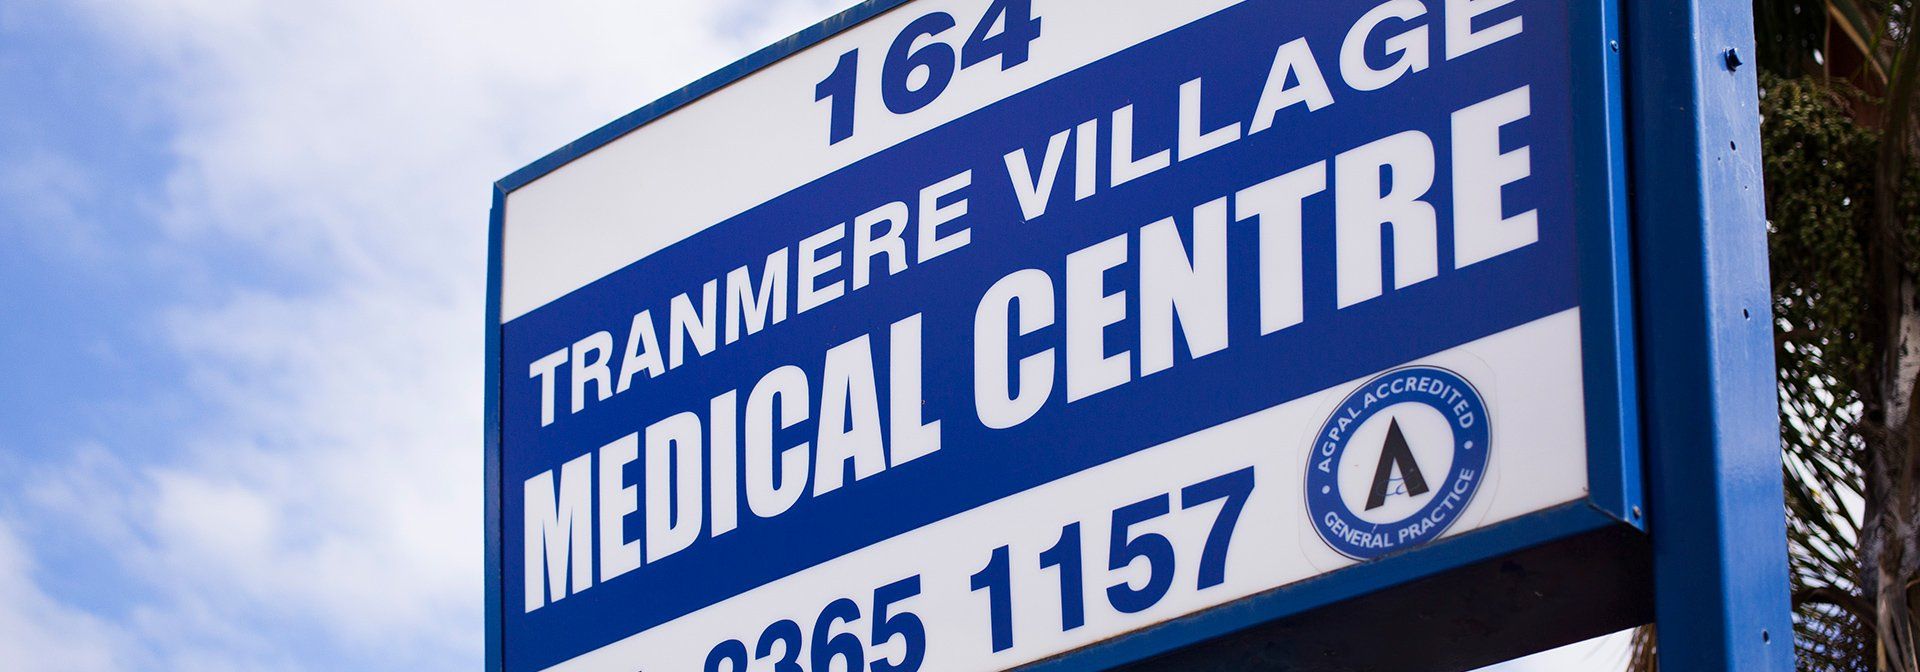 Tranmere Village Medical Centre Street Sign